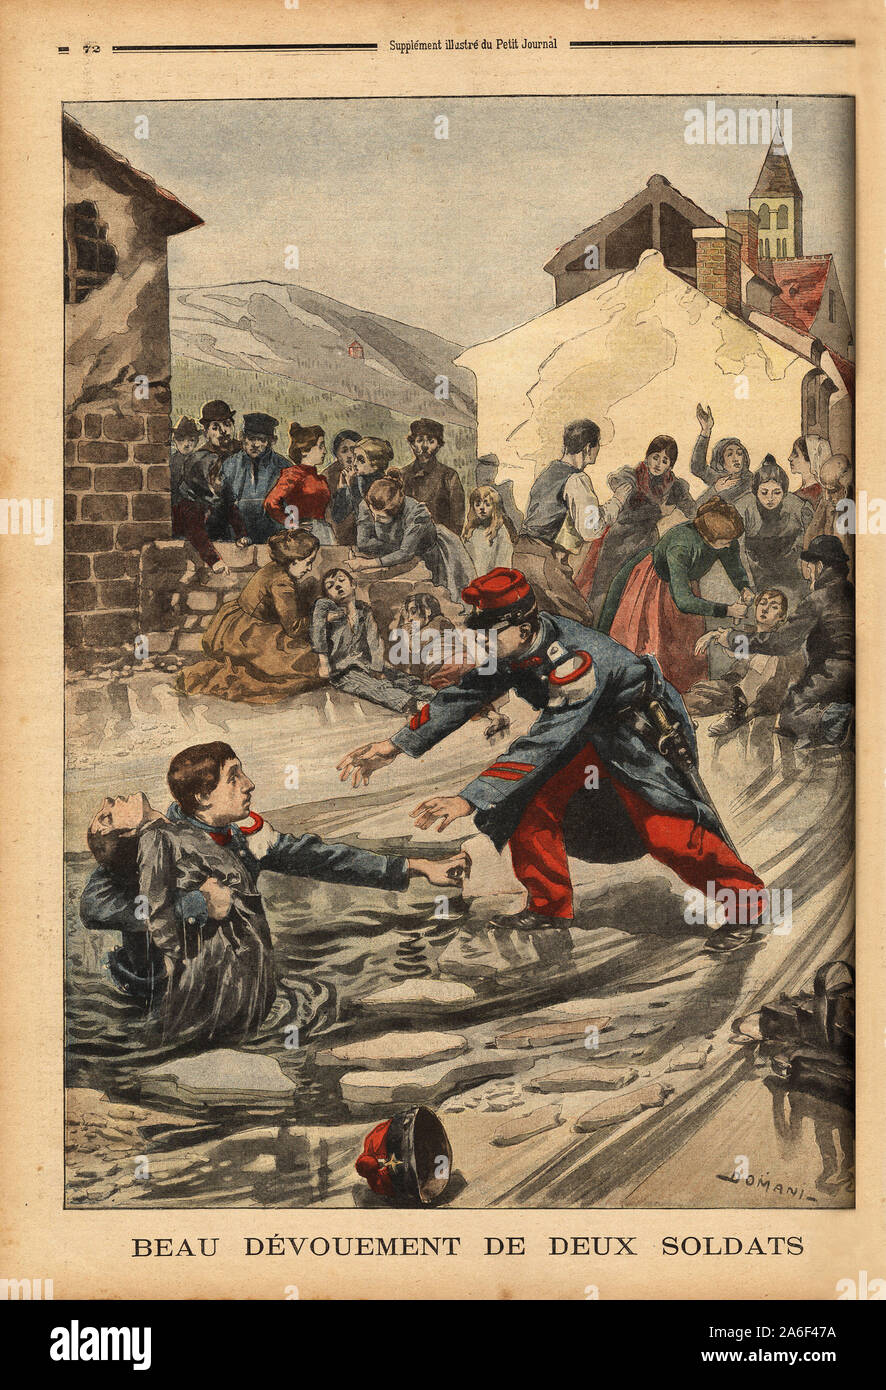 Le devouement de 2 soldats, Fontaine, pres de Dijon, pour secourir des enfants qui, voulant jouer un faire des glissades sur une mare gelee, sont a Foto Stock